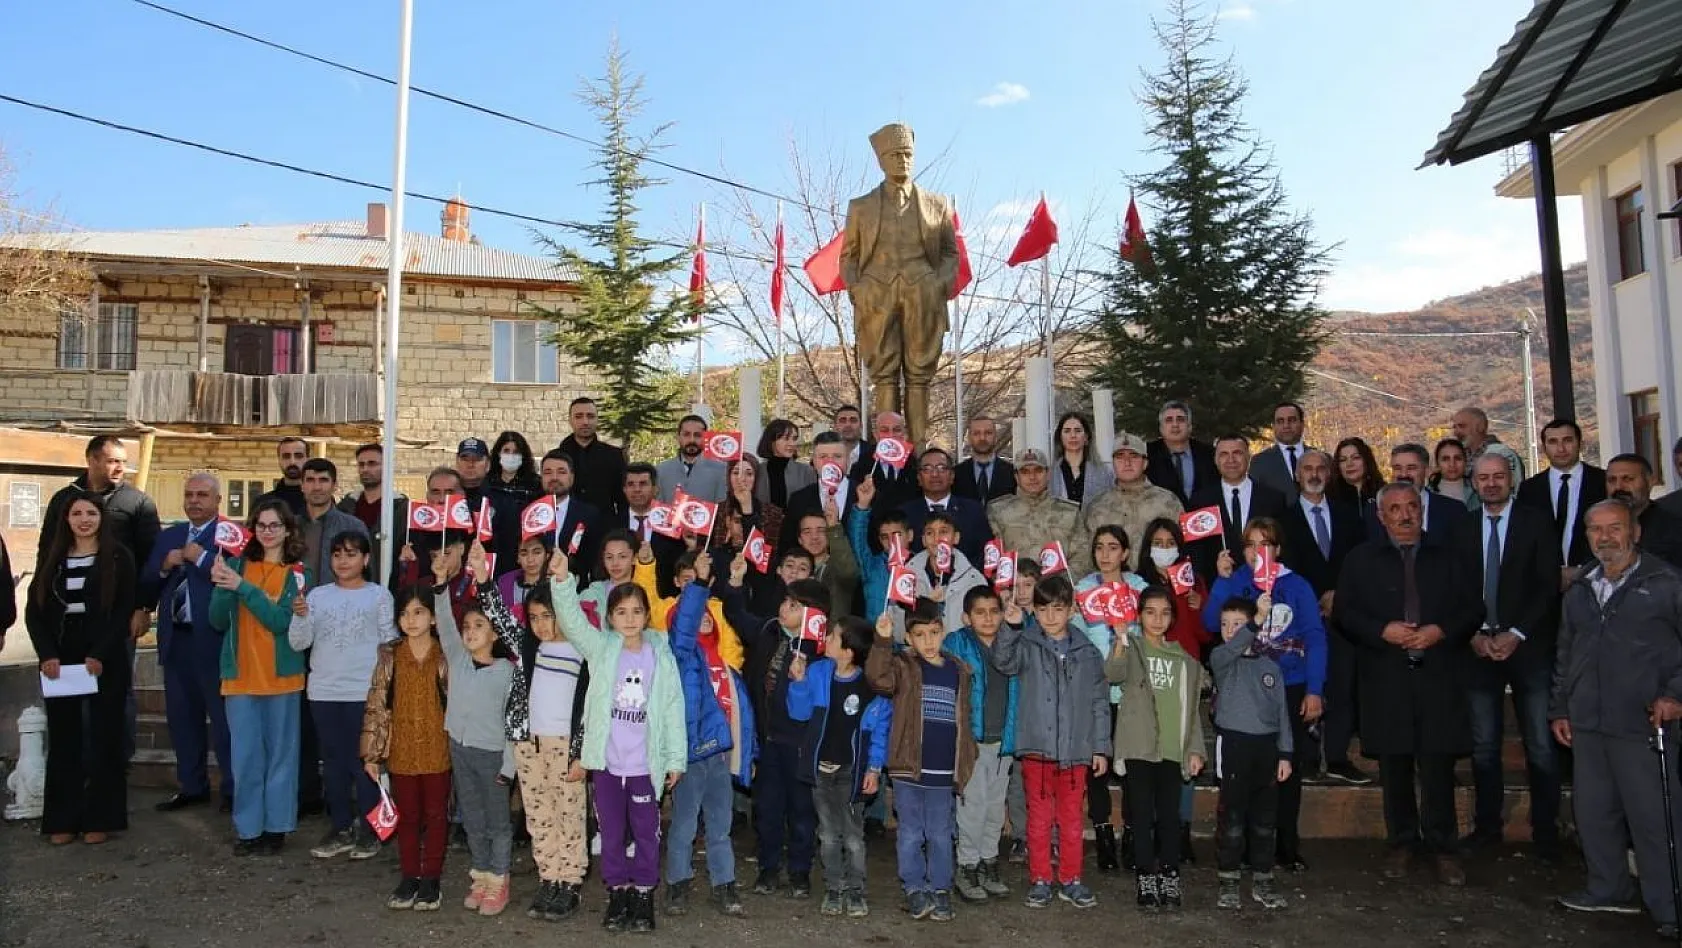 Tunceli'de okul lojmanında şehit edilen öğretmenler anıldı